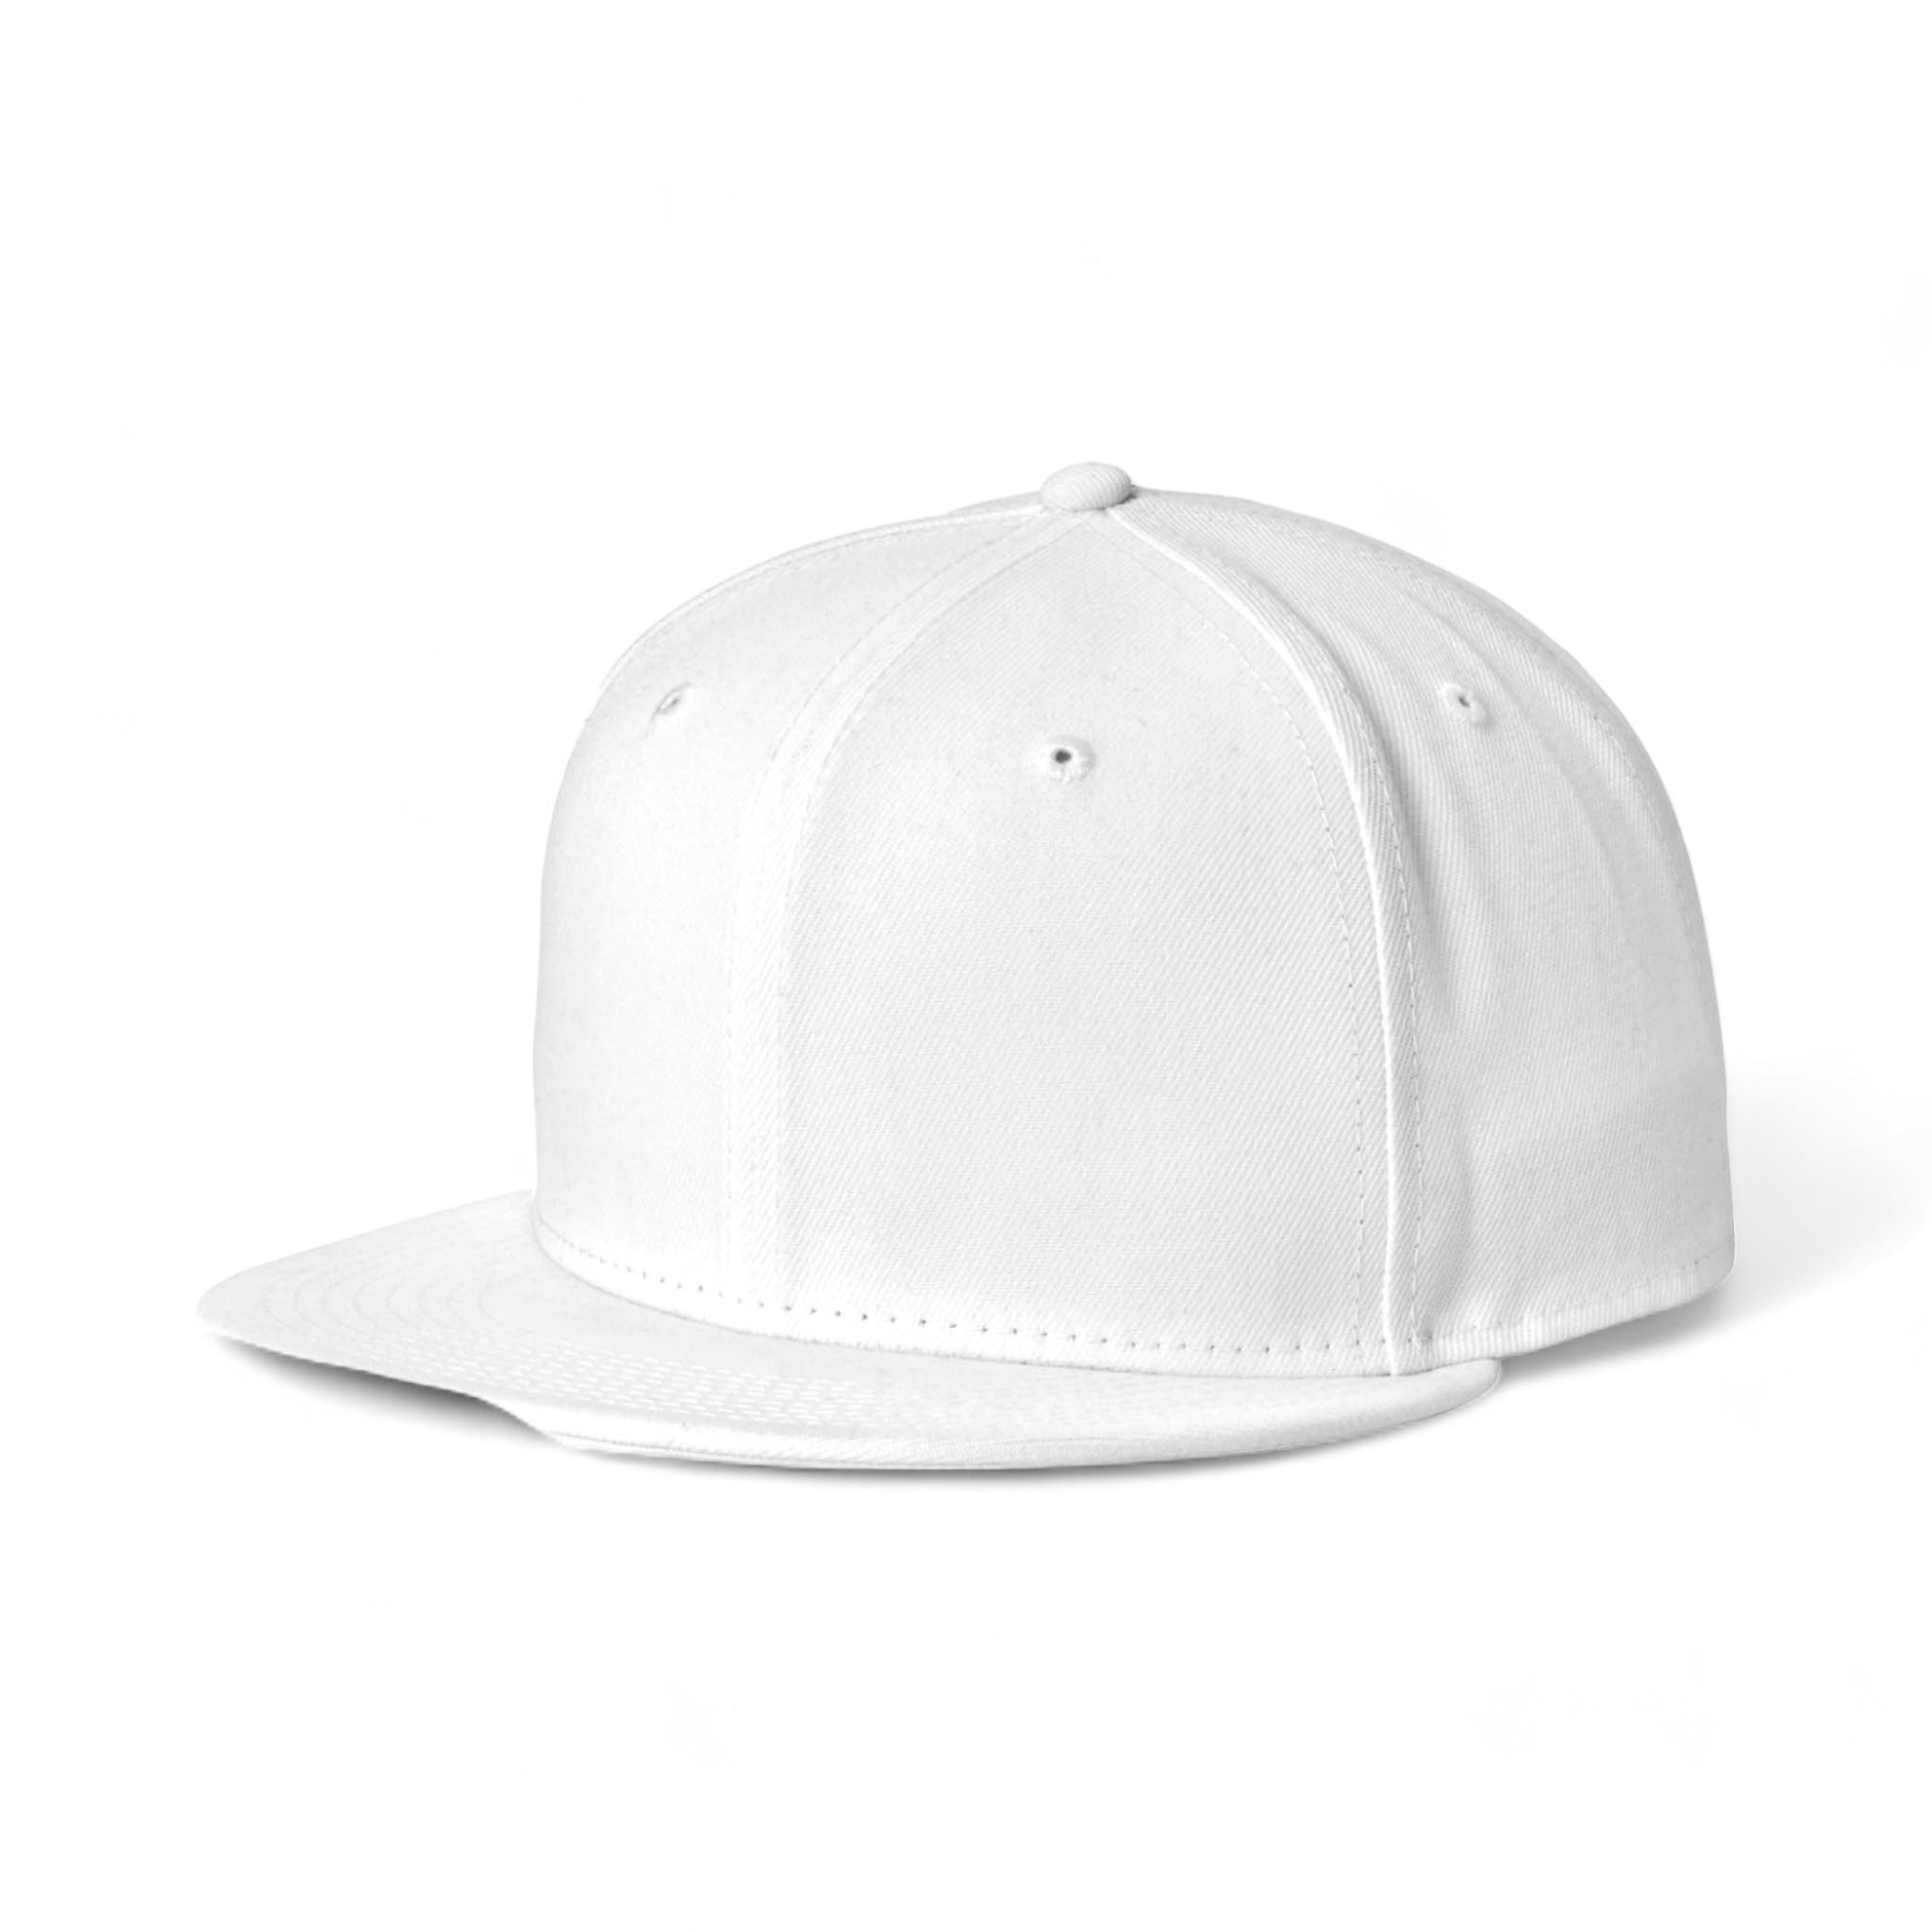 Side view of New Era NE4020 custom hat in white